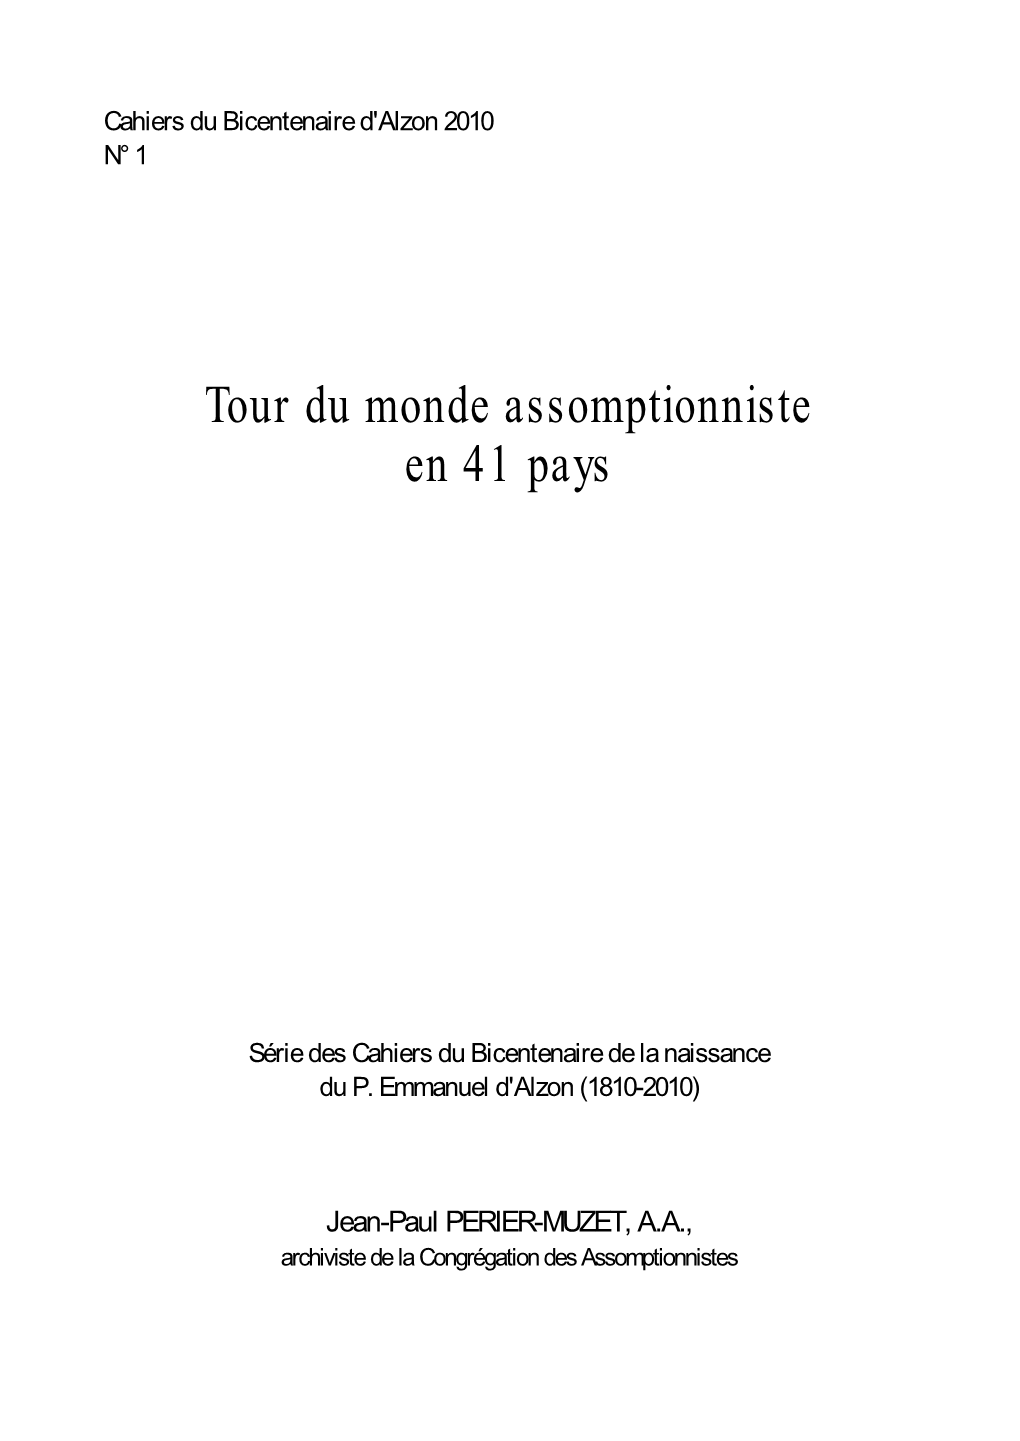 Tour Du Monde Assomptionniste En 41 Pays